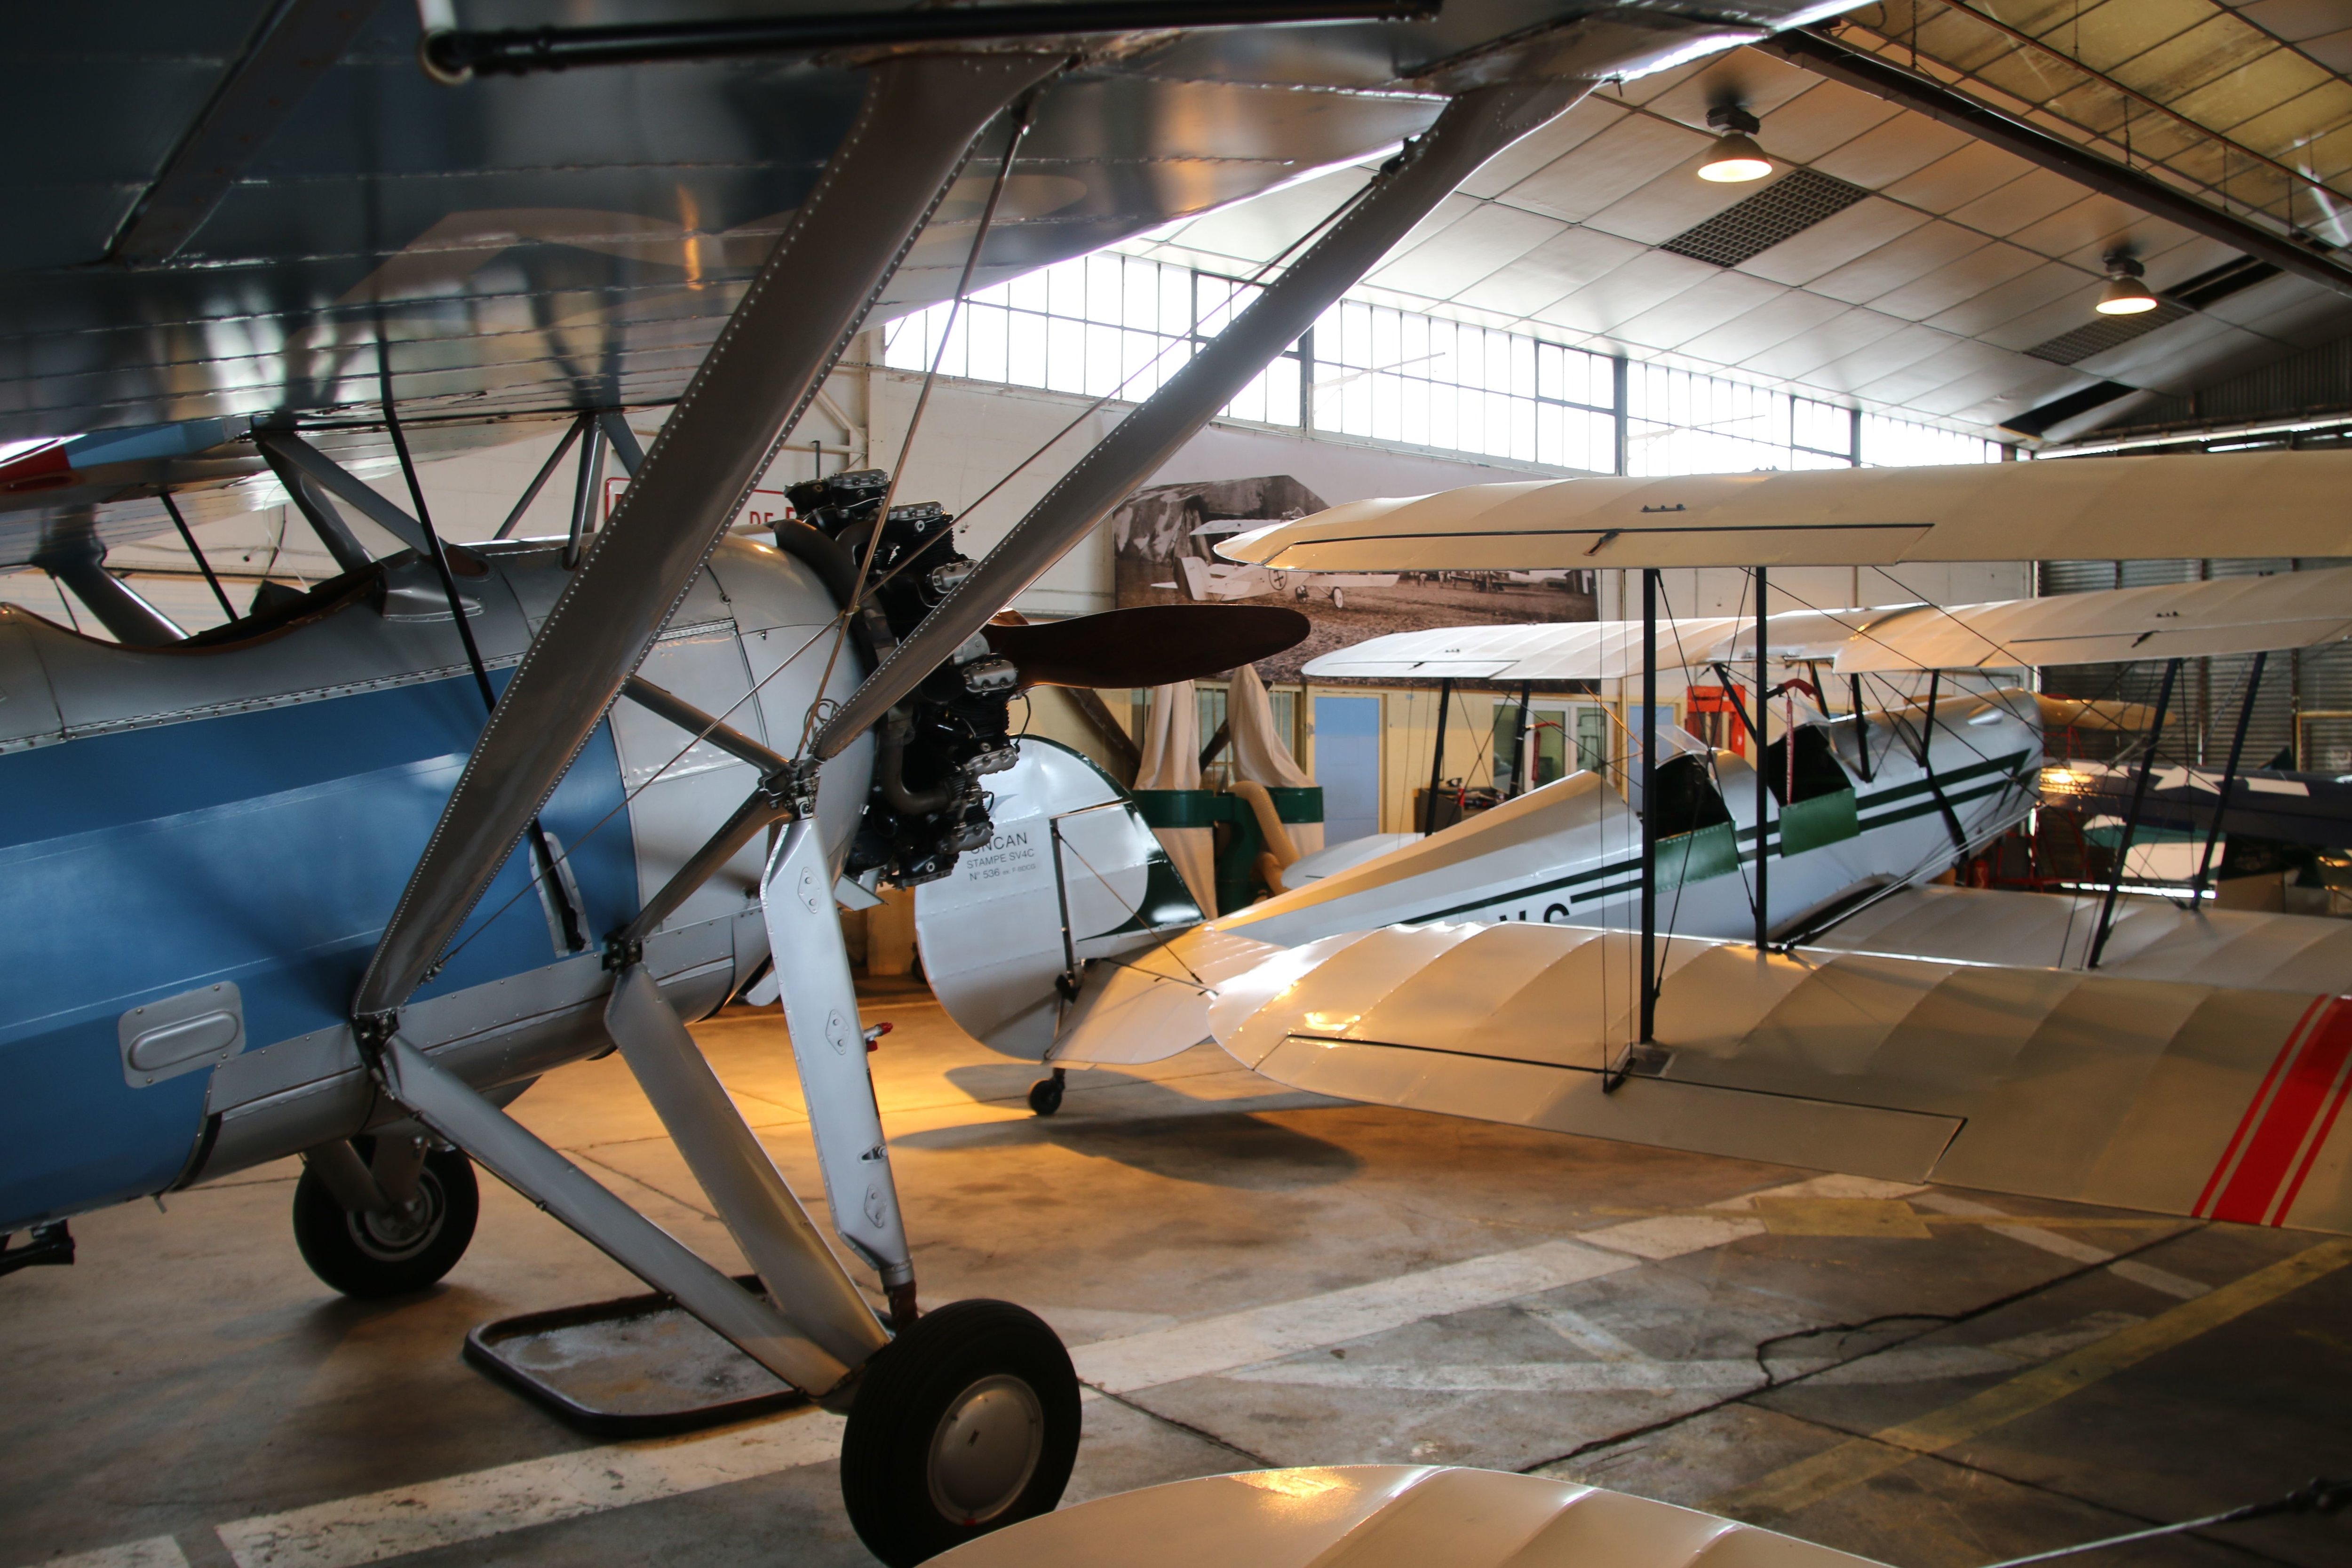 Margny-lès-Compiègne, le 10 avril. L'association compte 15 avions de collection, tous antérieurs à 1940, comme le Morane de 1929, en bleu ou, au fond, un Stampe SV4 C, tous deux en état de vol. LP/Albert Péters